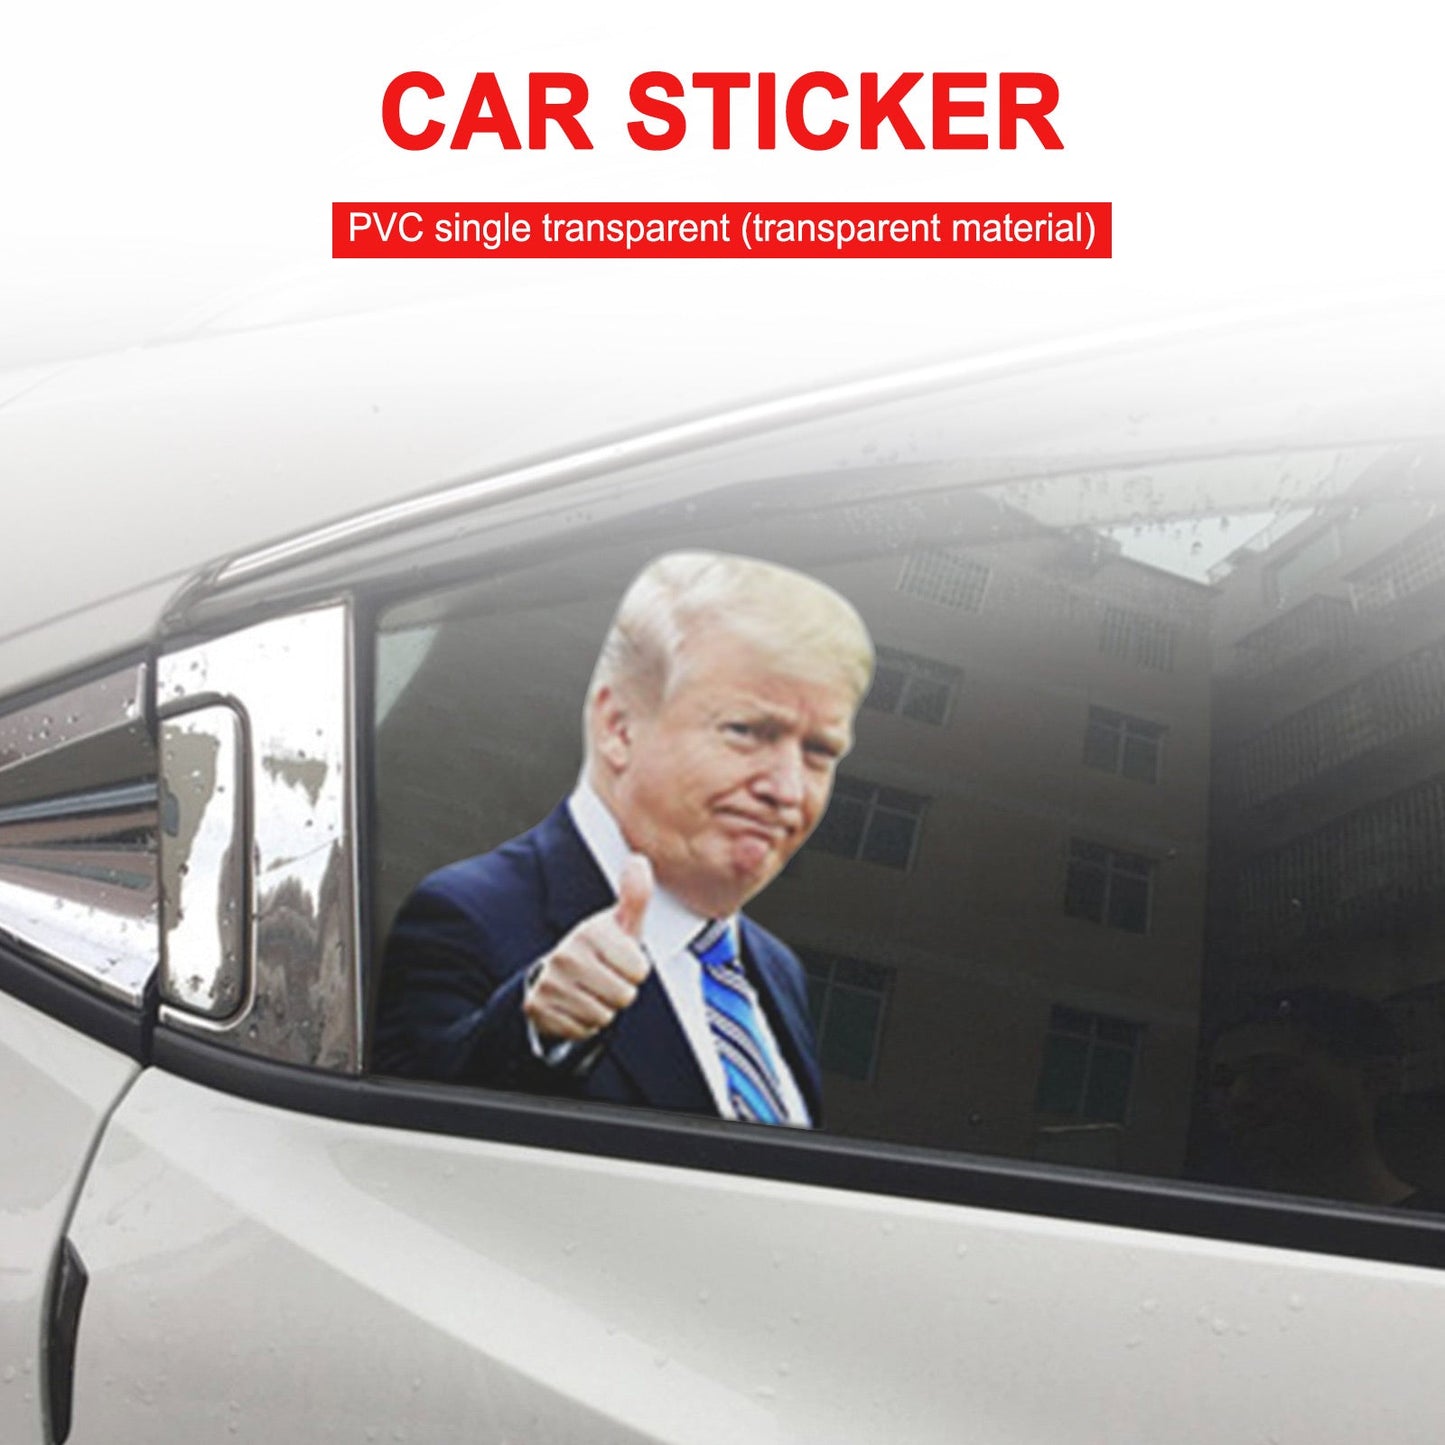 2020 voiture personnes décalcomanie Trump élection présidentielle côté passager fenêtre droite